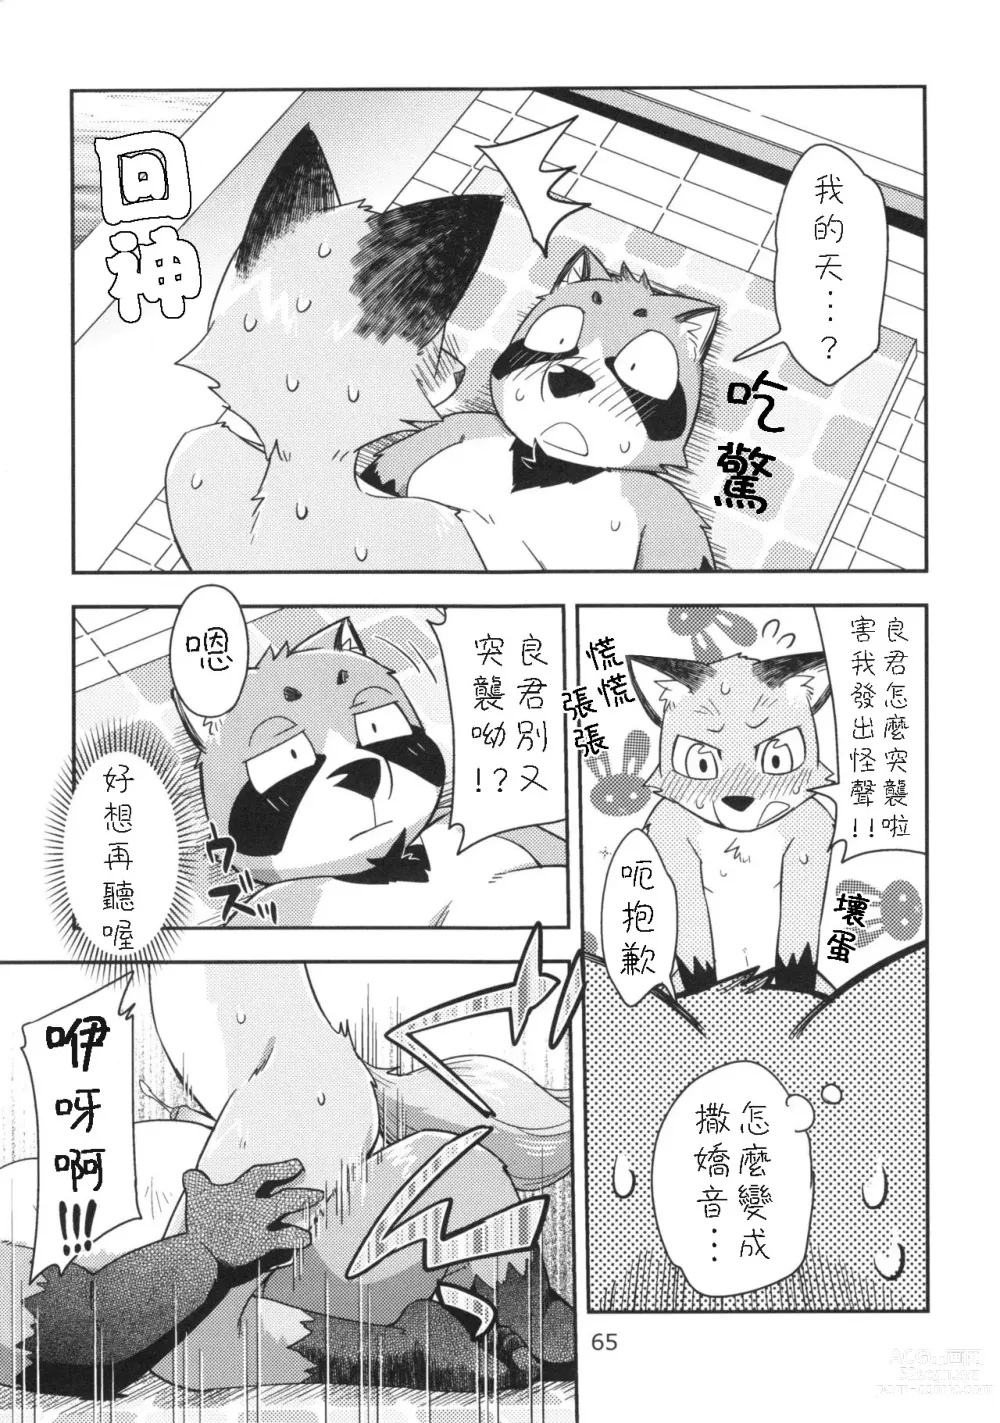 Page 24 of doujinshi Harubon 10